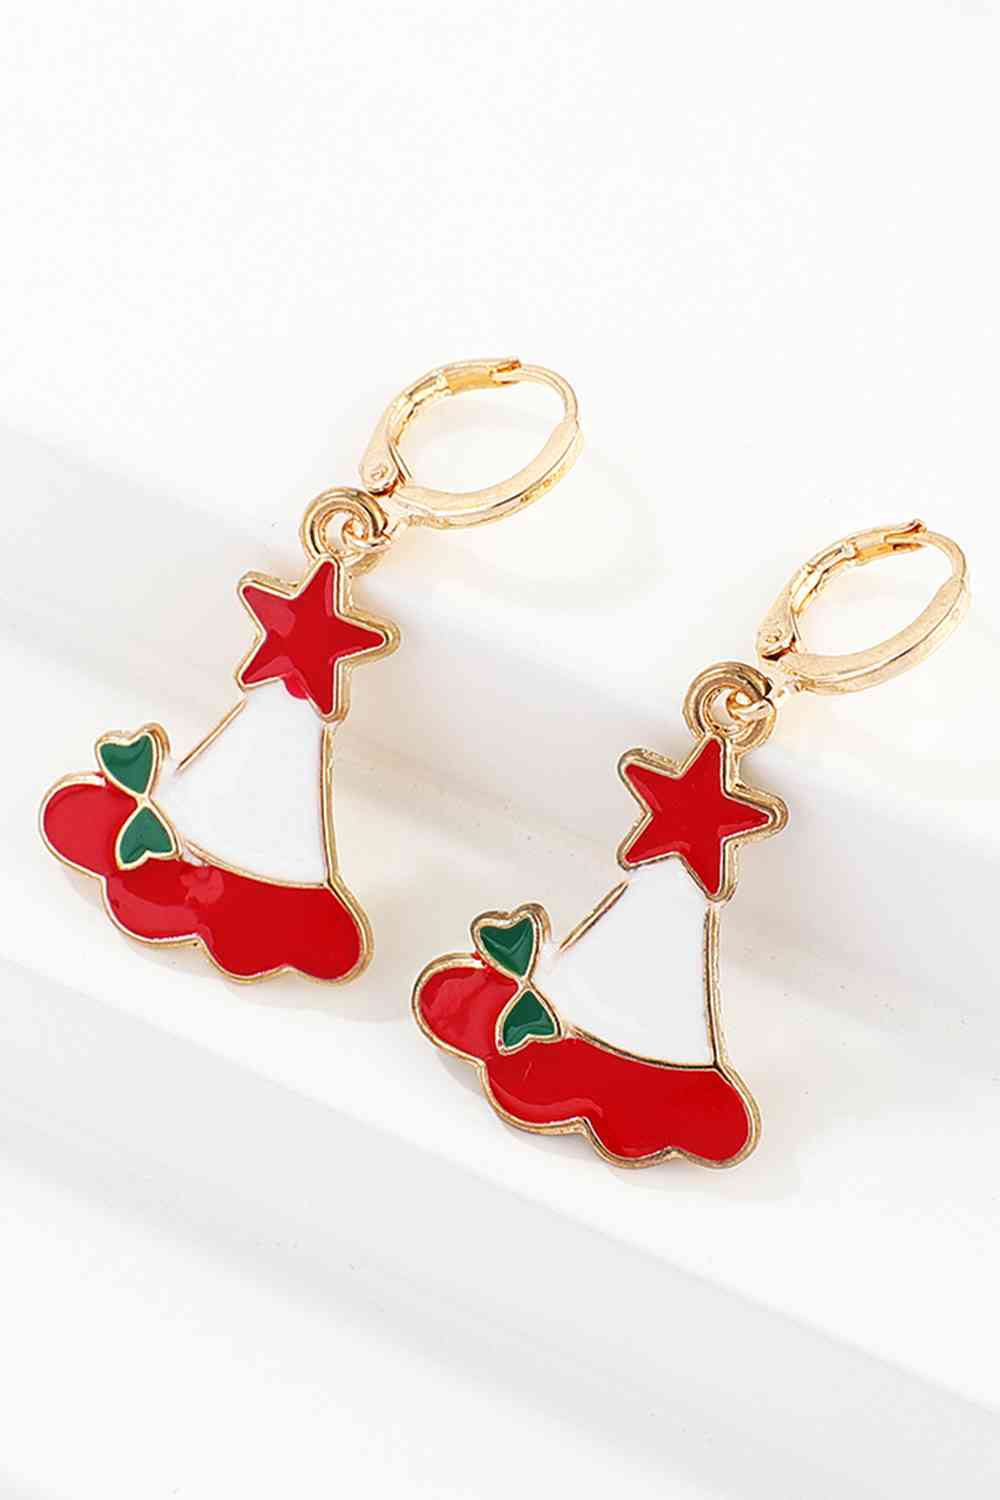 Christmas Theme Alloy Earrings - Women’s Jewelry - Earrings - 19 - 2024